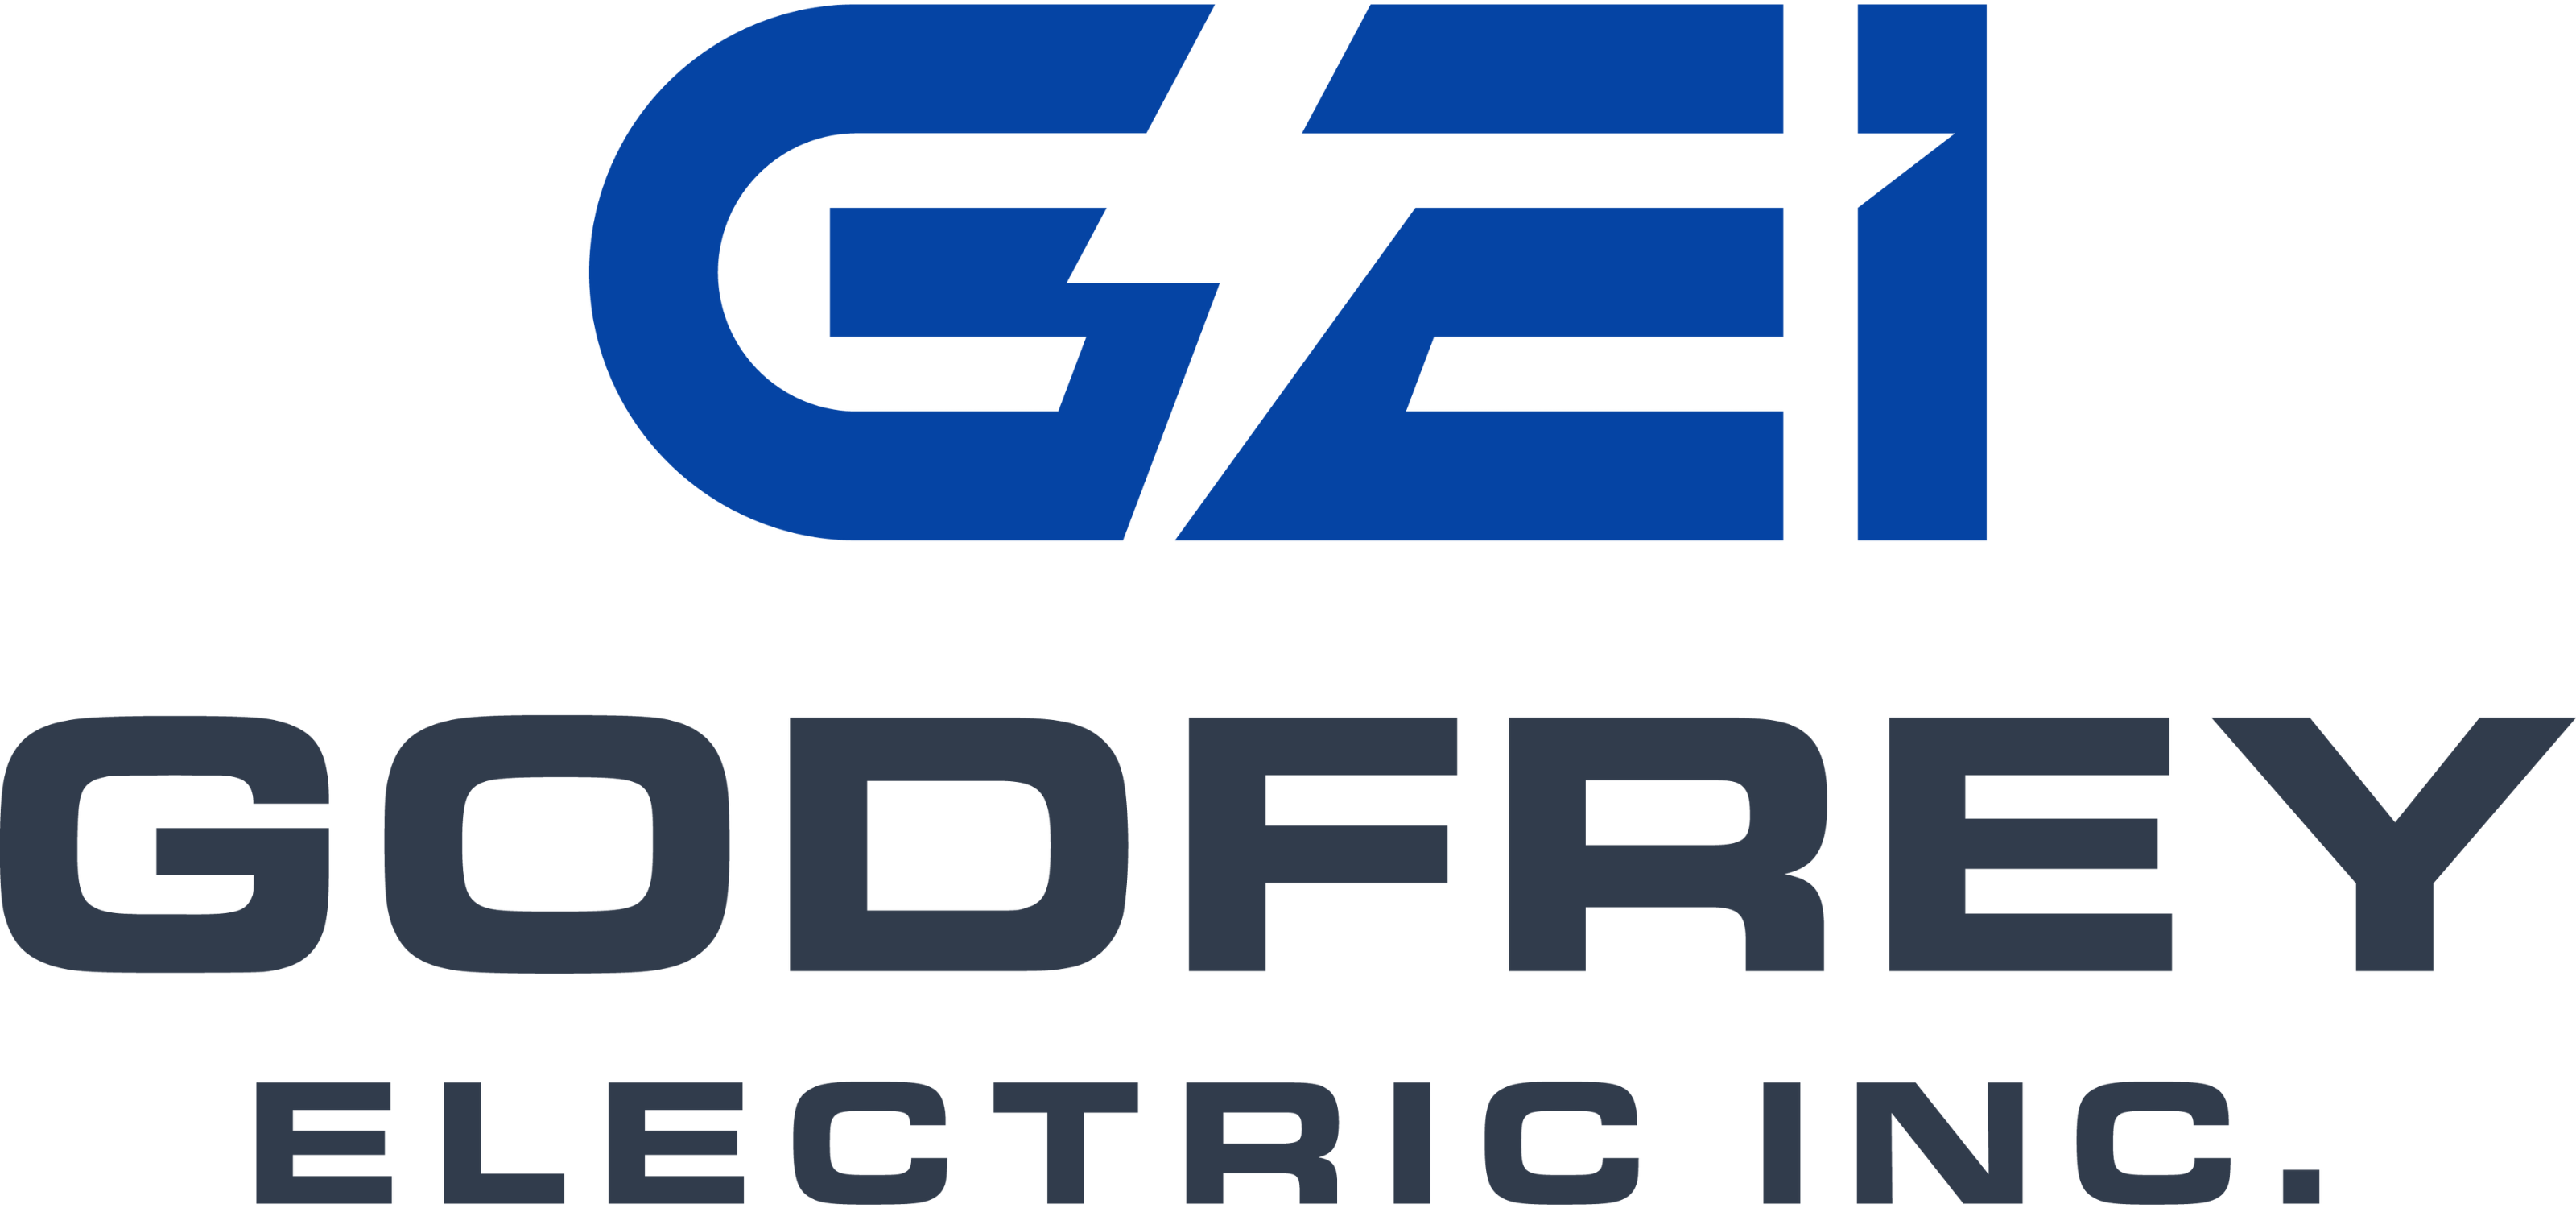 godfrey electric